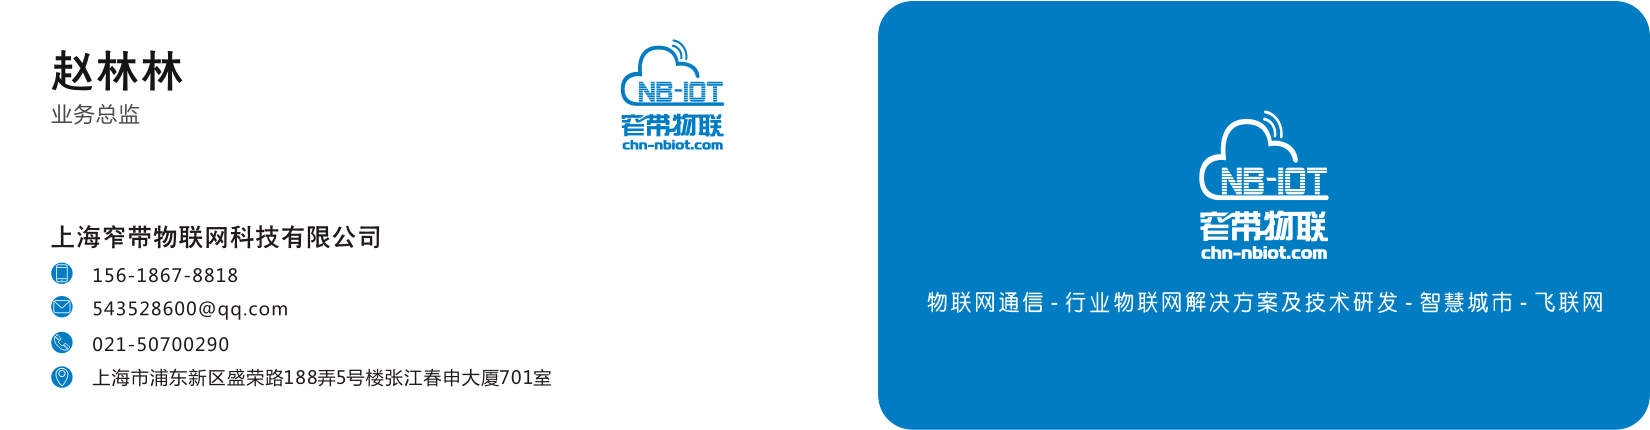 上海窄带物联网科技有限公司